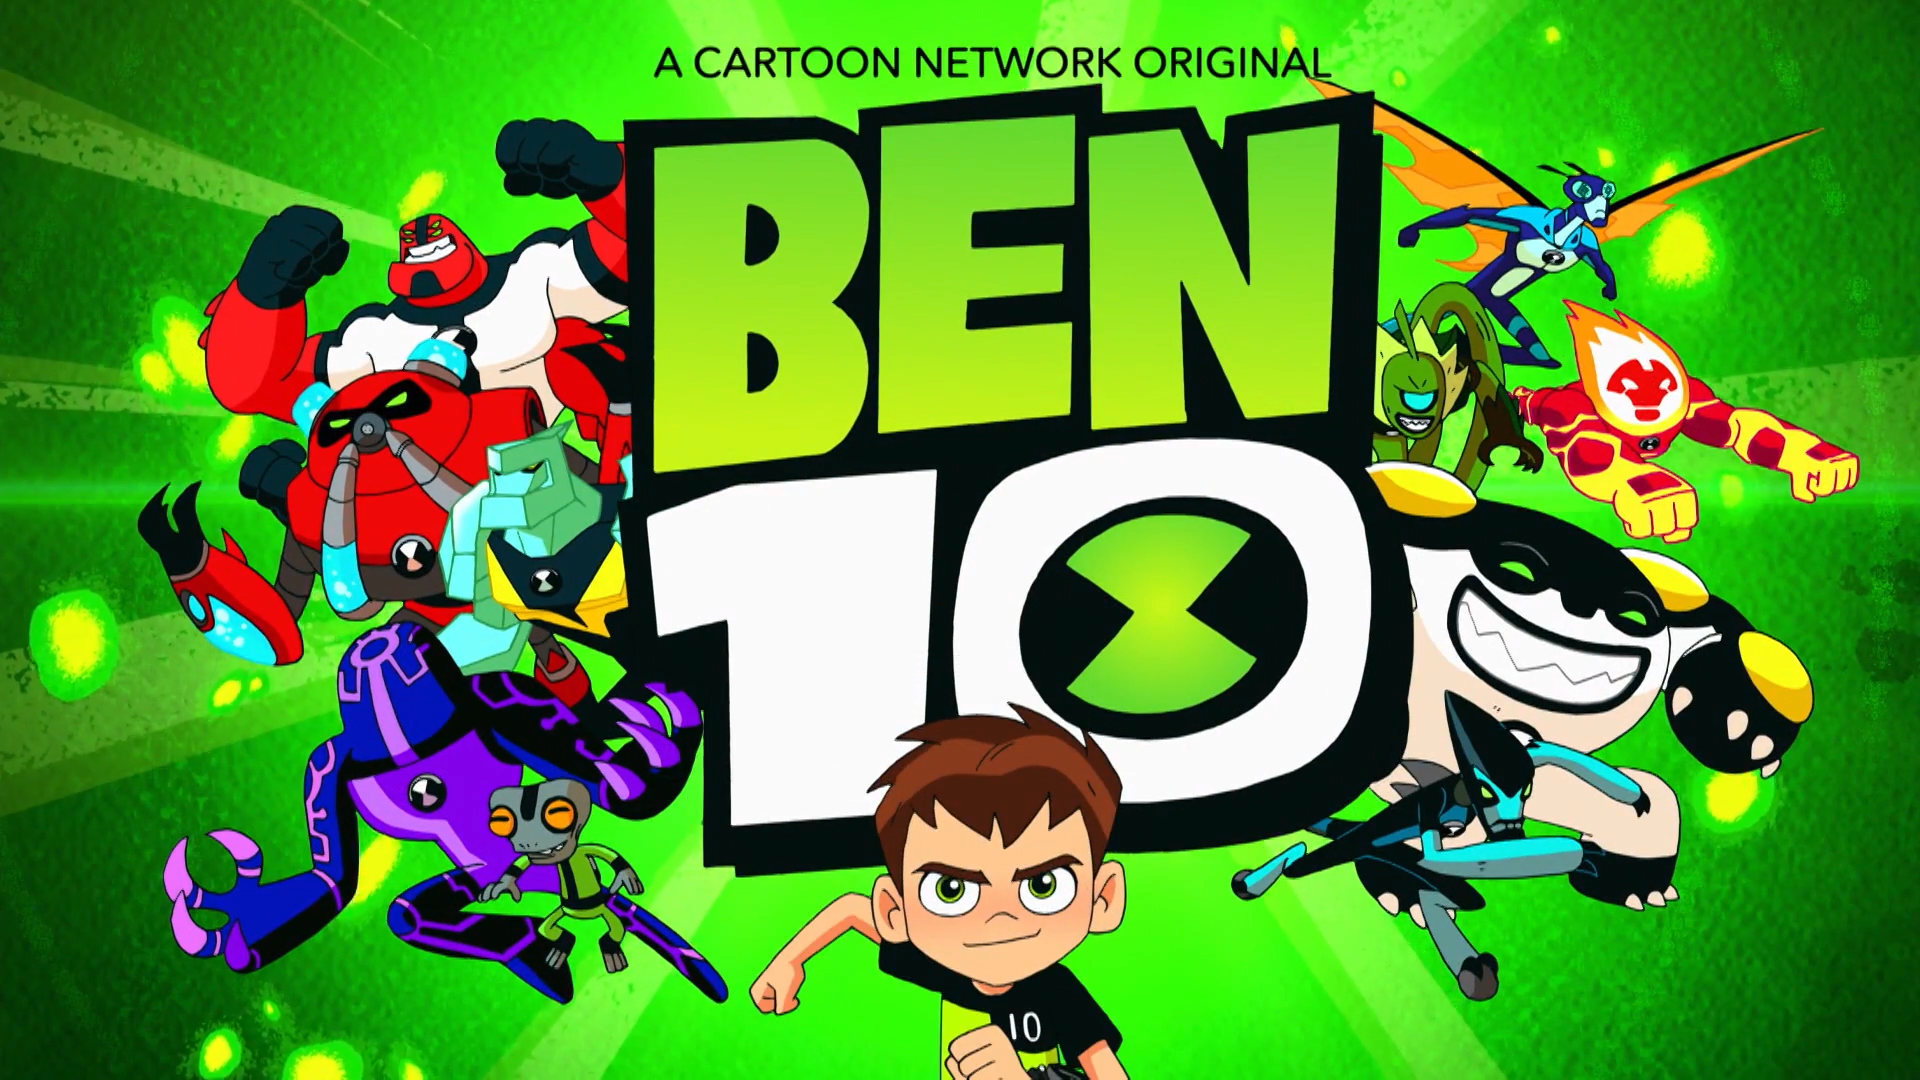 Ben 10 Reboot Coming to Cartoon Network - IGN